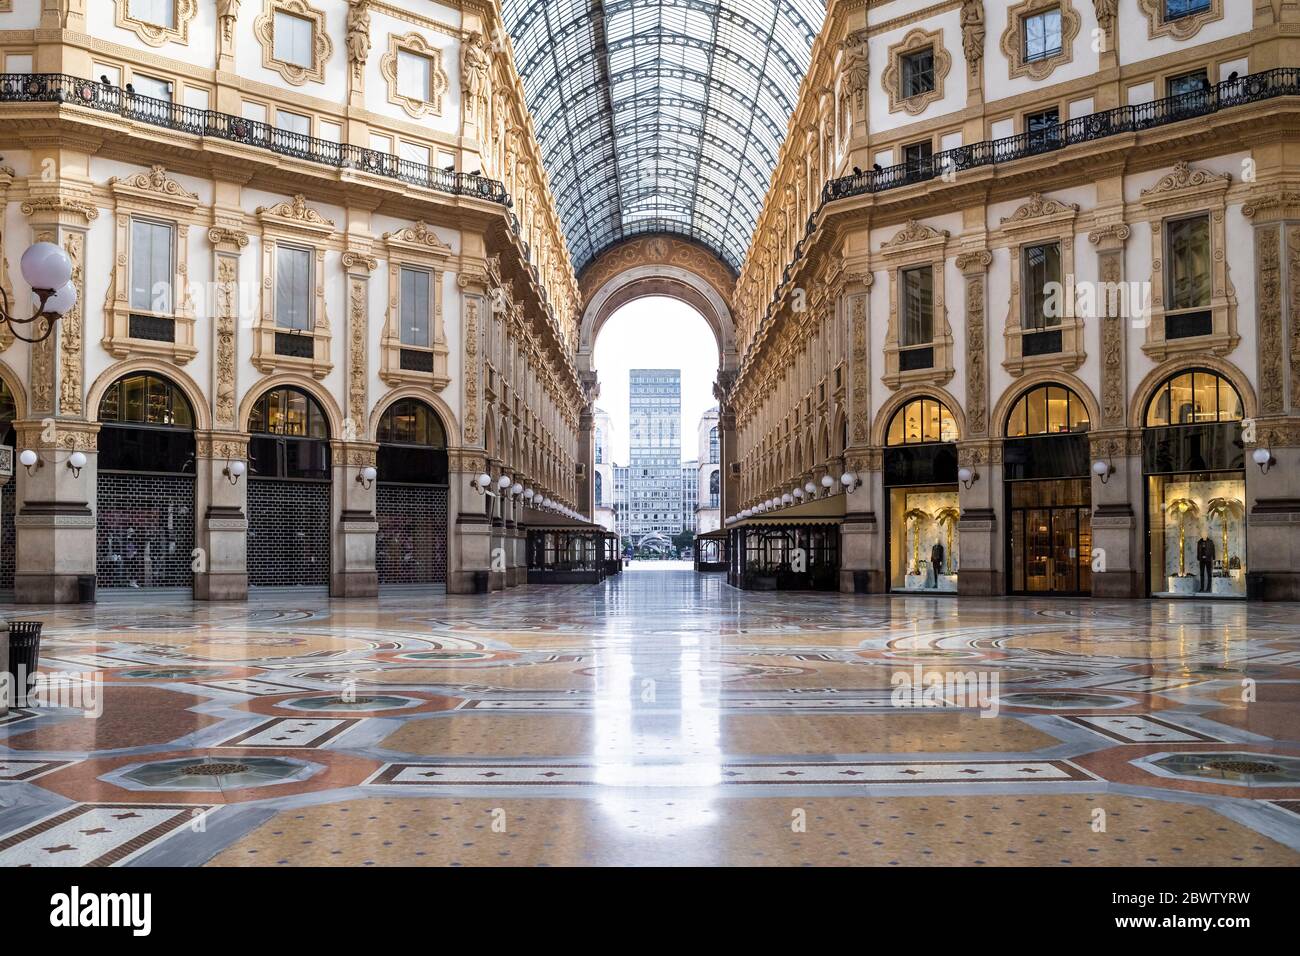 Italy, Milan, Interior of Galleria Vittorio Emanuele II during COVID-19 outbreak Stock Photo